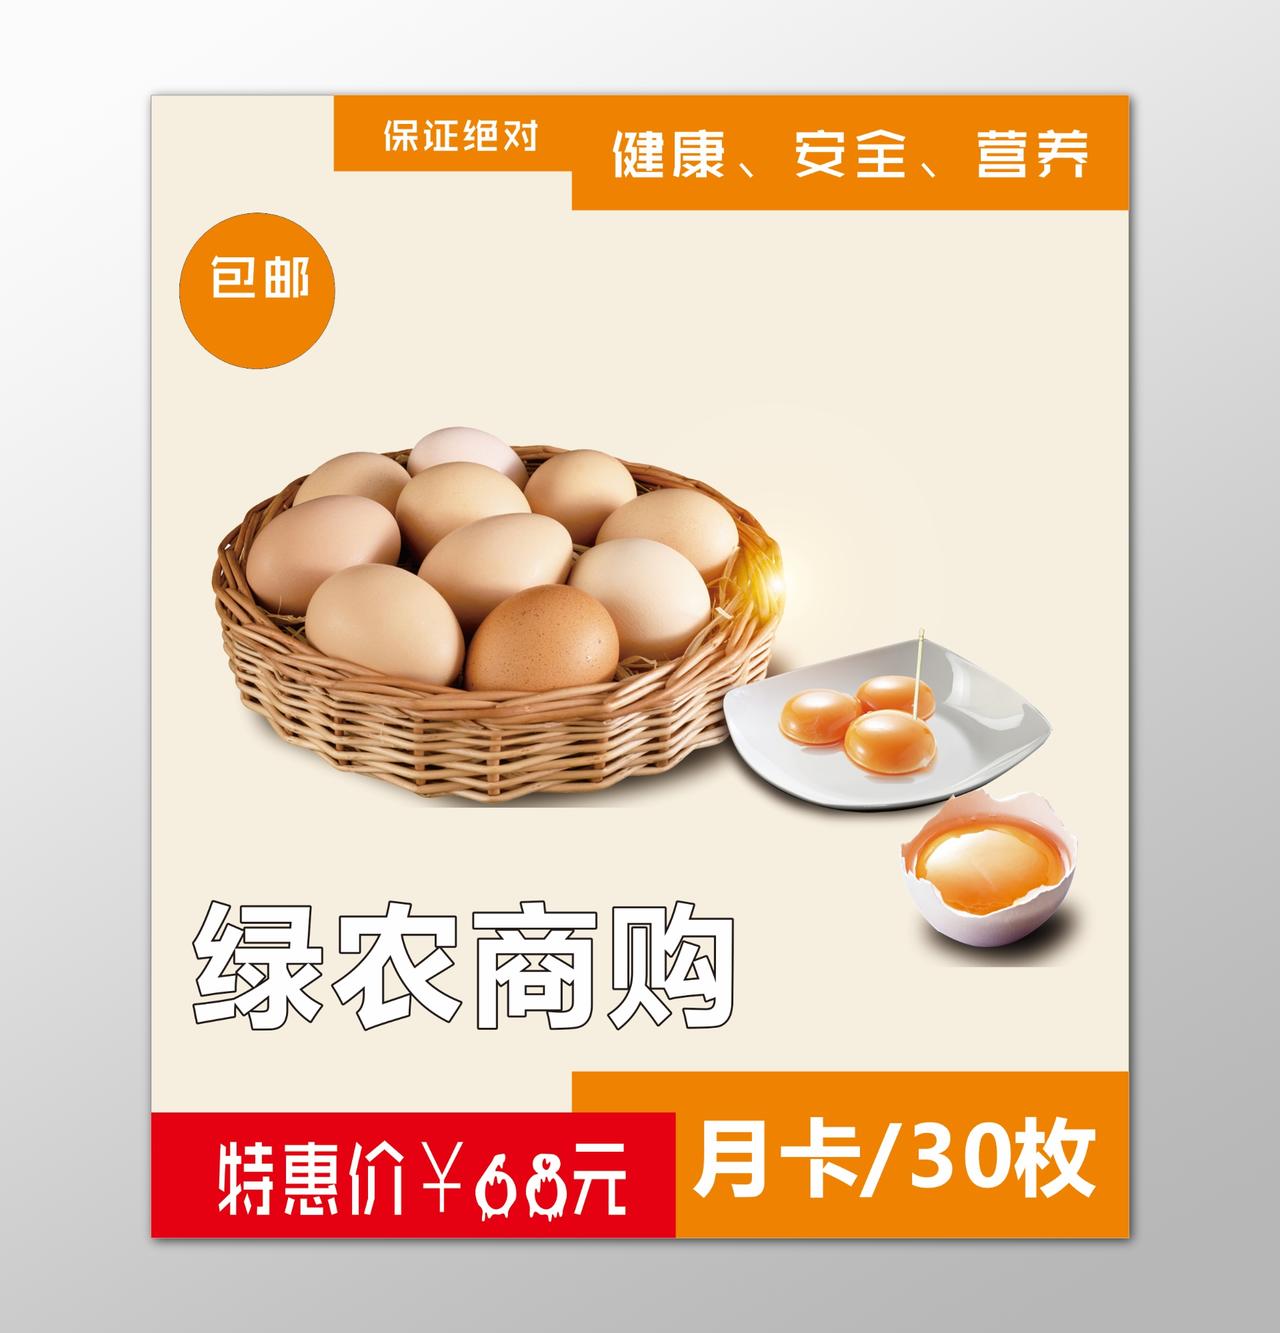 鸡蛋生鲜土特产健康安全营养优惠折扣海报模板